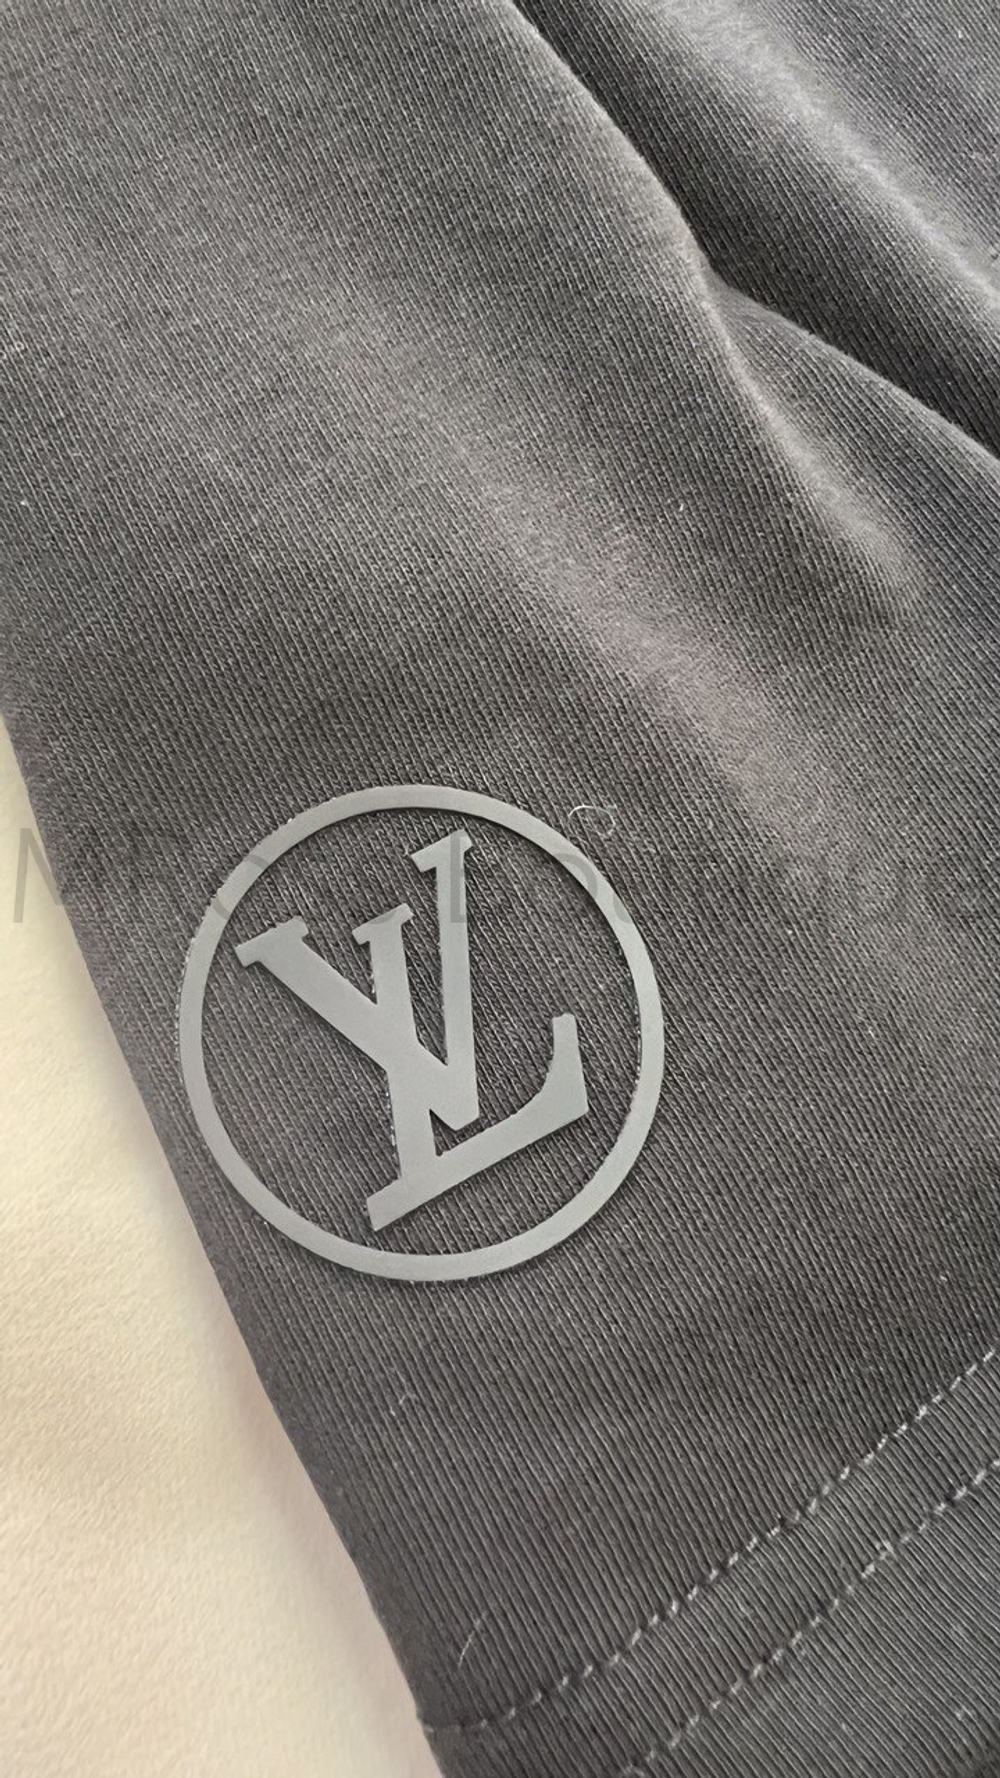 Черная футболка Louis Vuitton с объемной резиновой надписью на груди